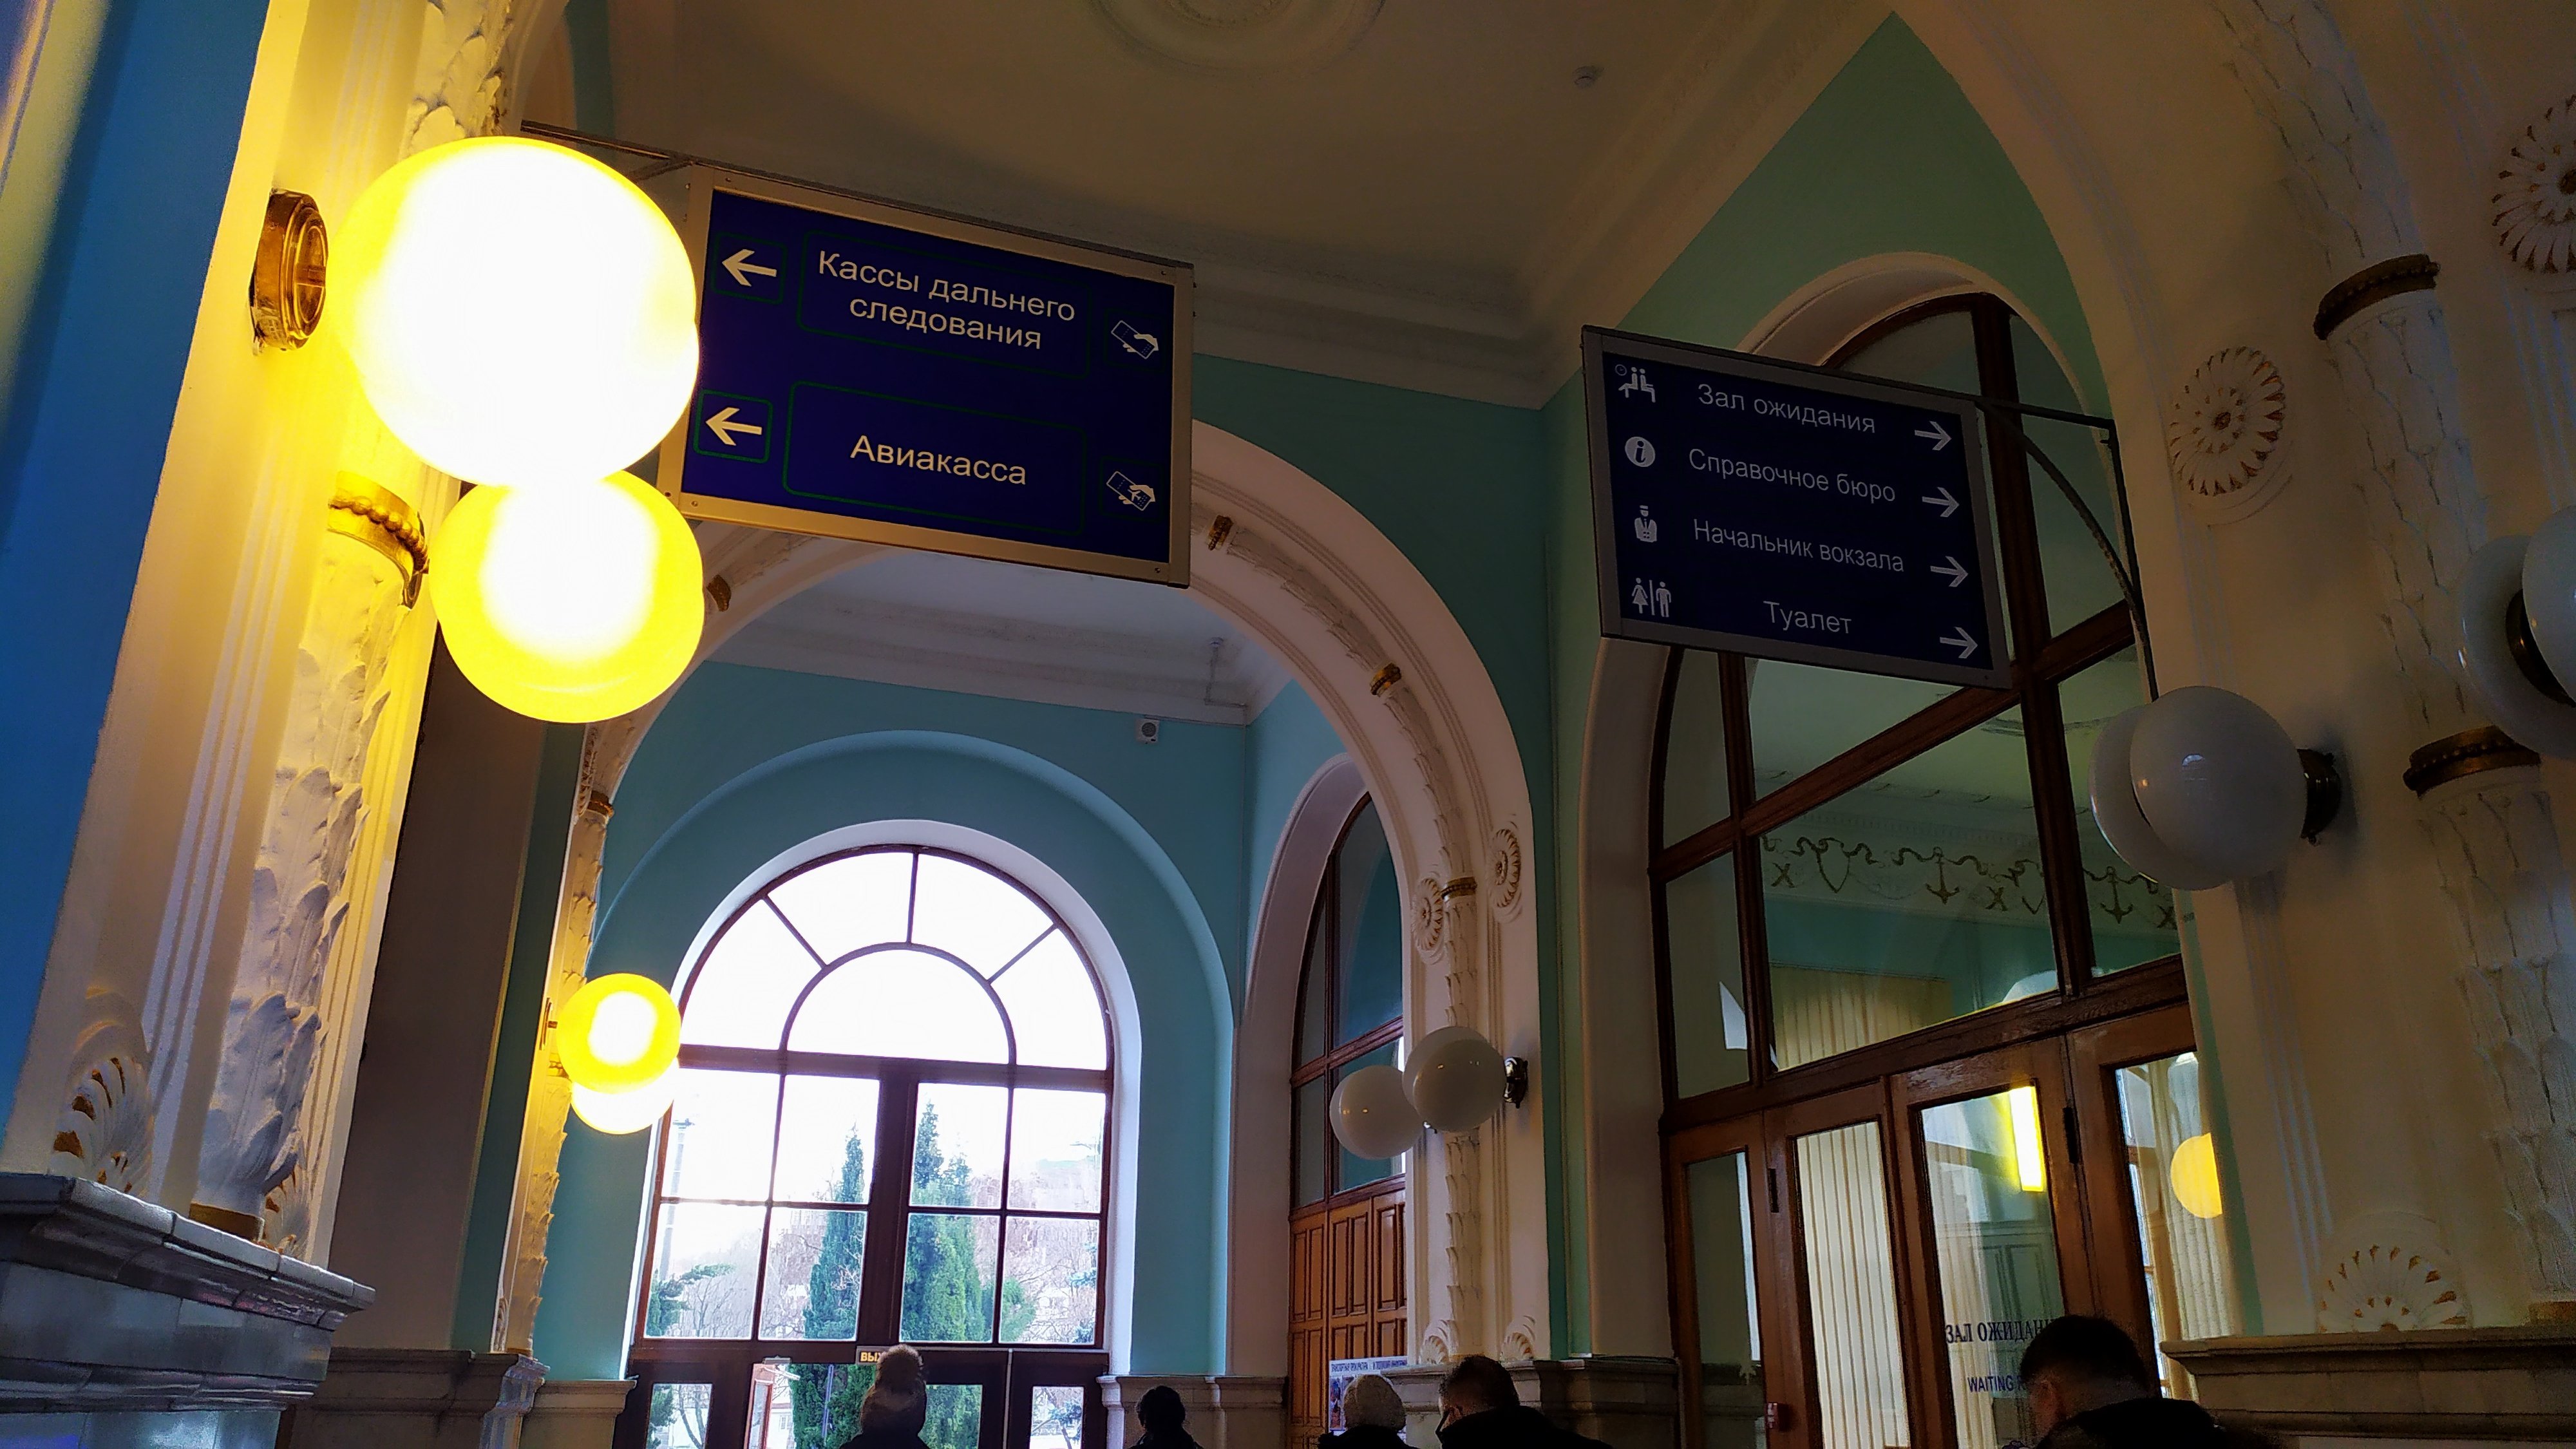 Информационные таблички в здании вокзала Севастополя